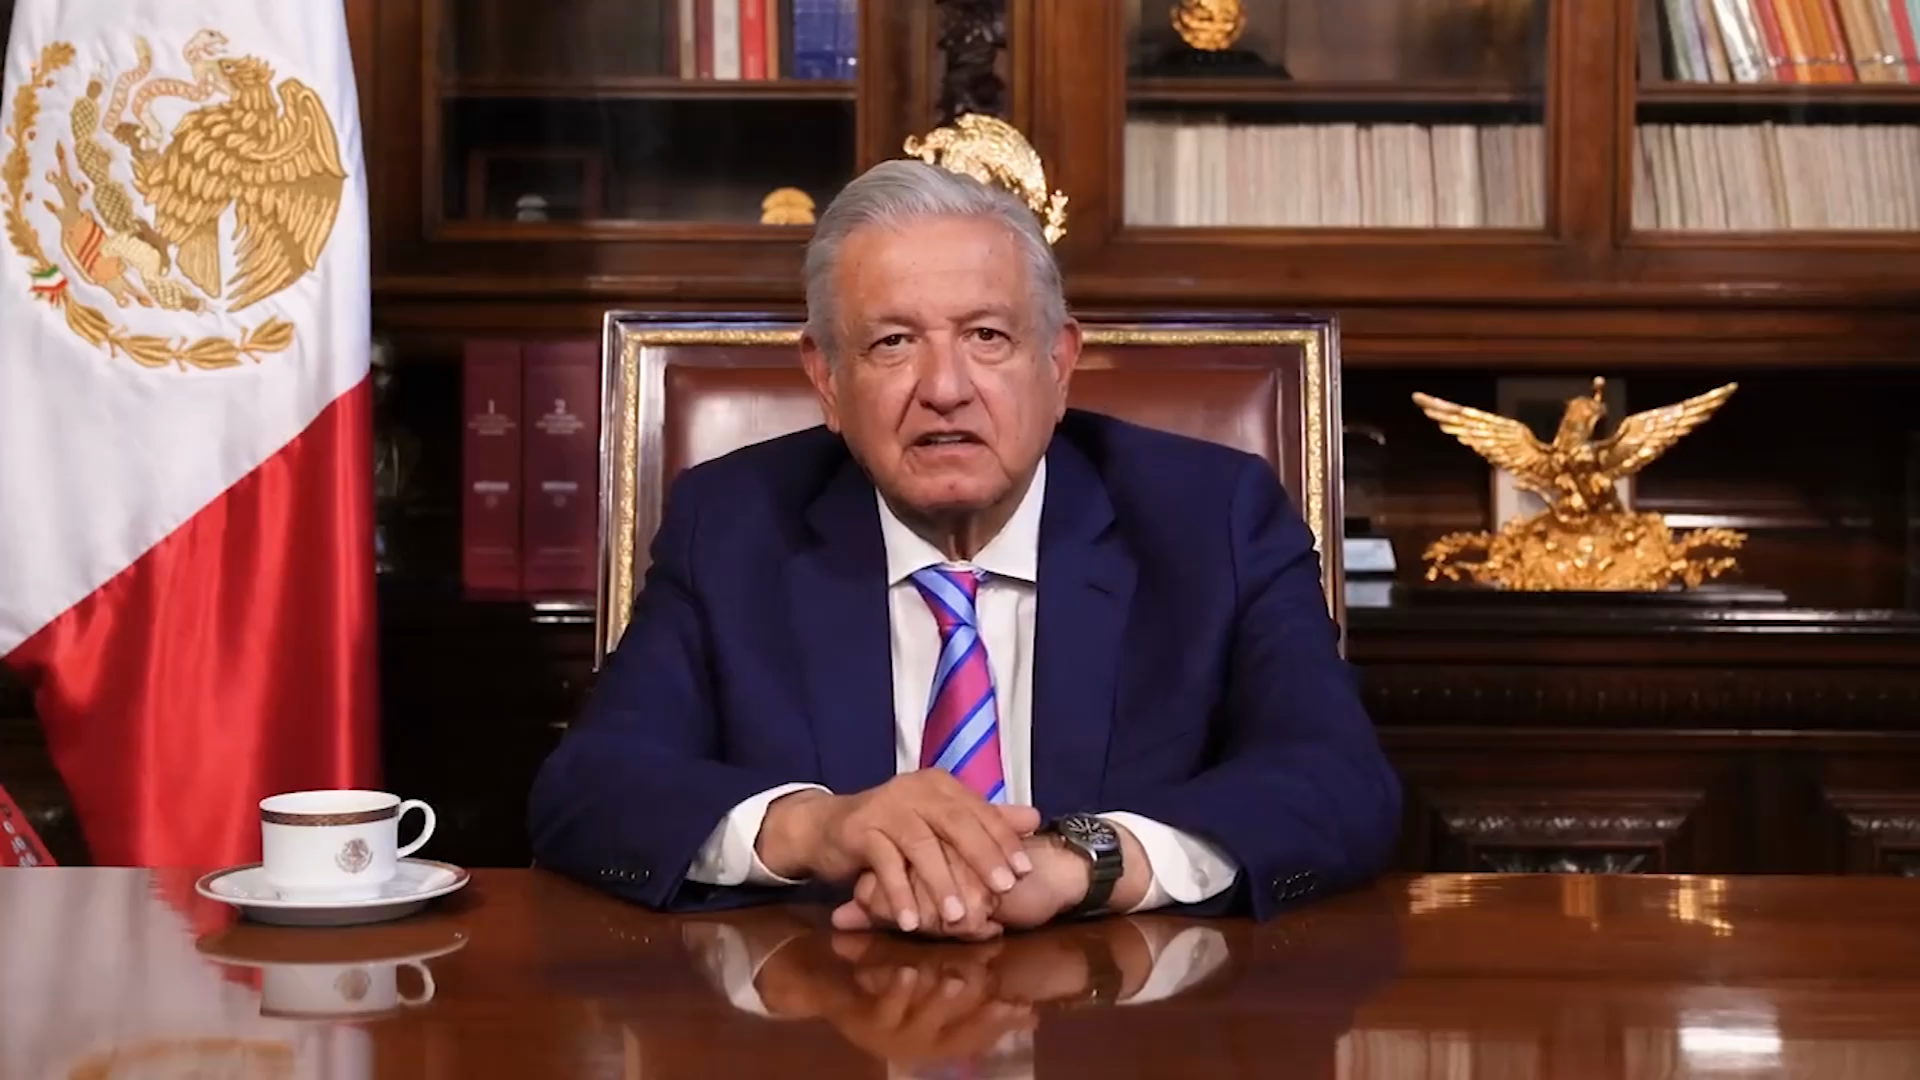 Mira el video del presidente López Obrador que despierta polémica